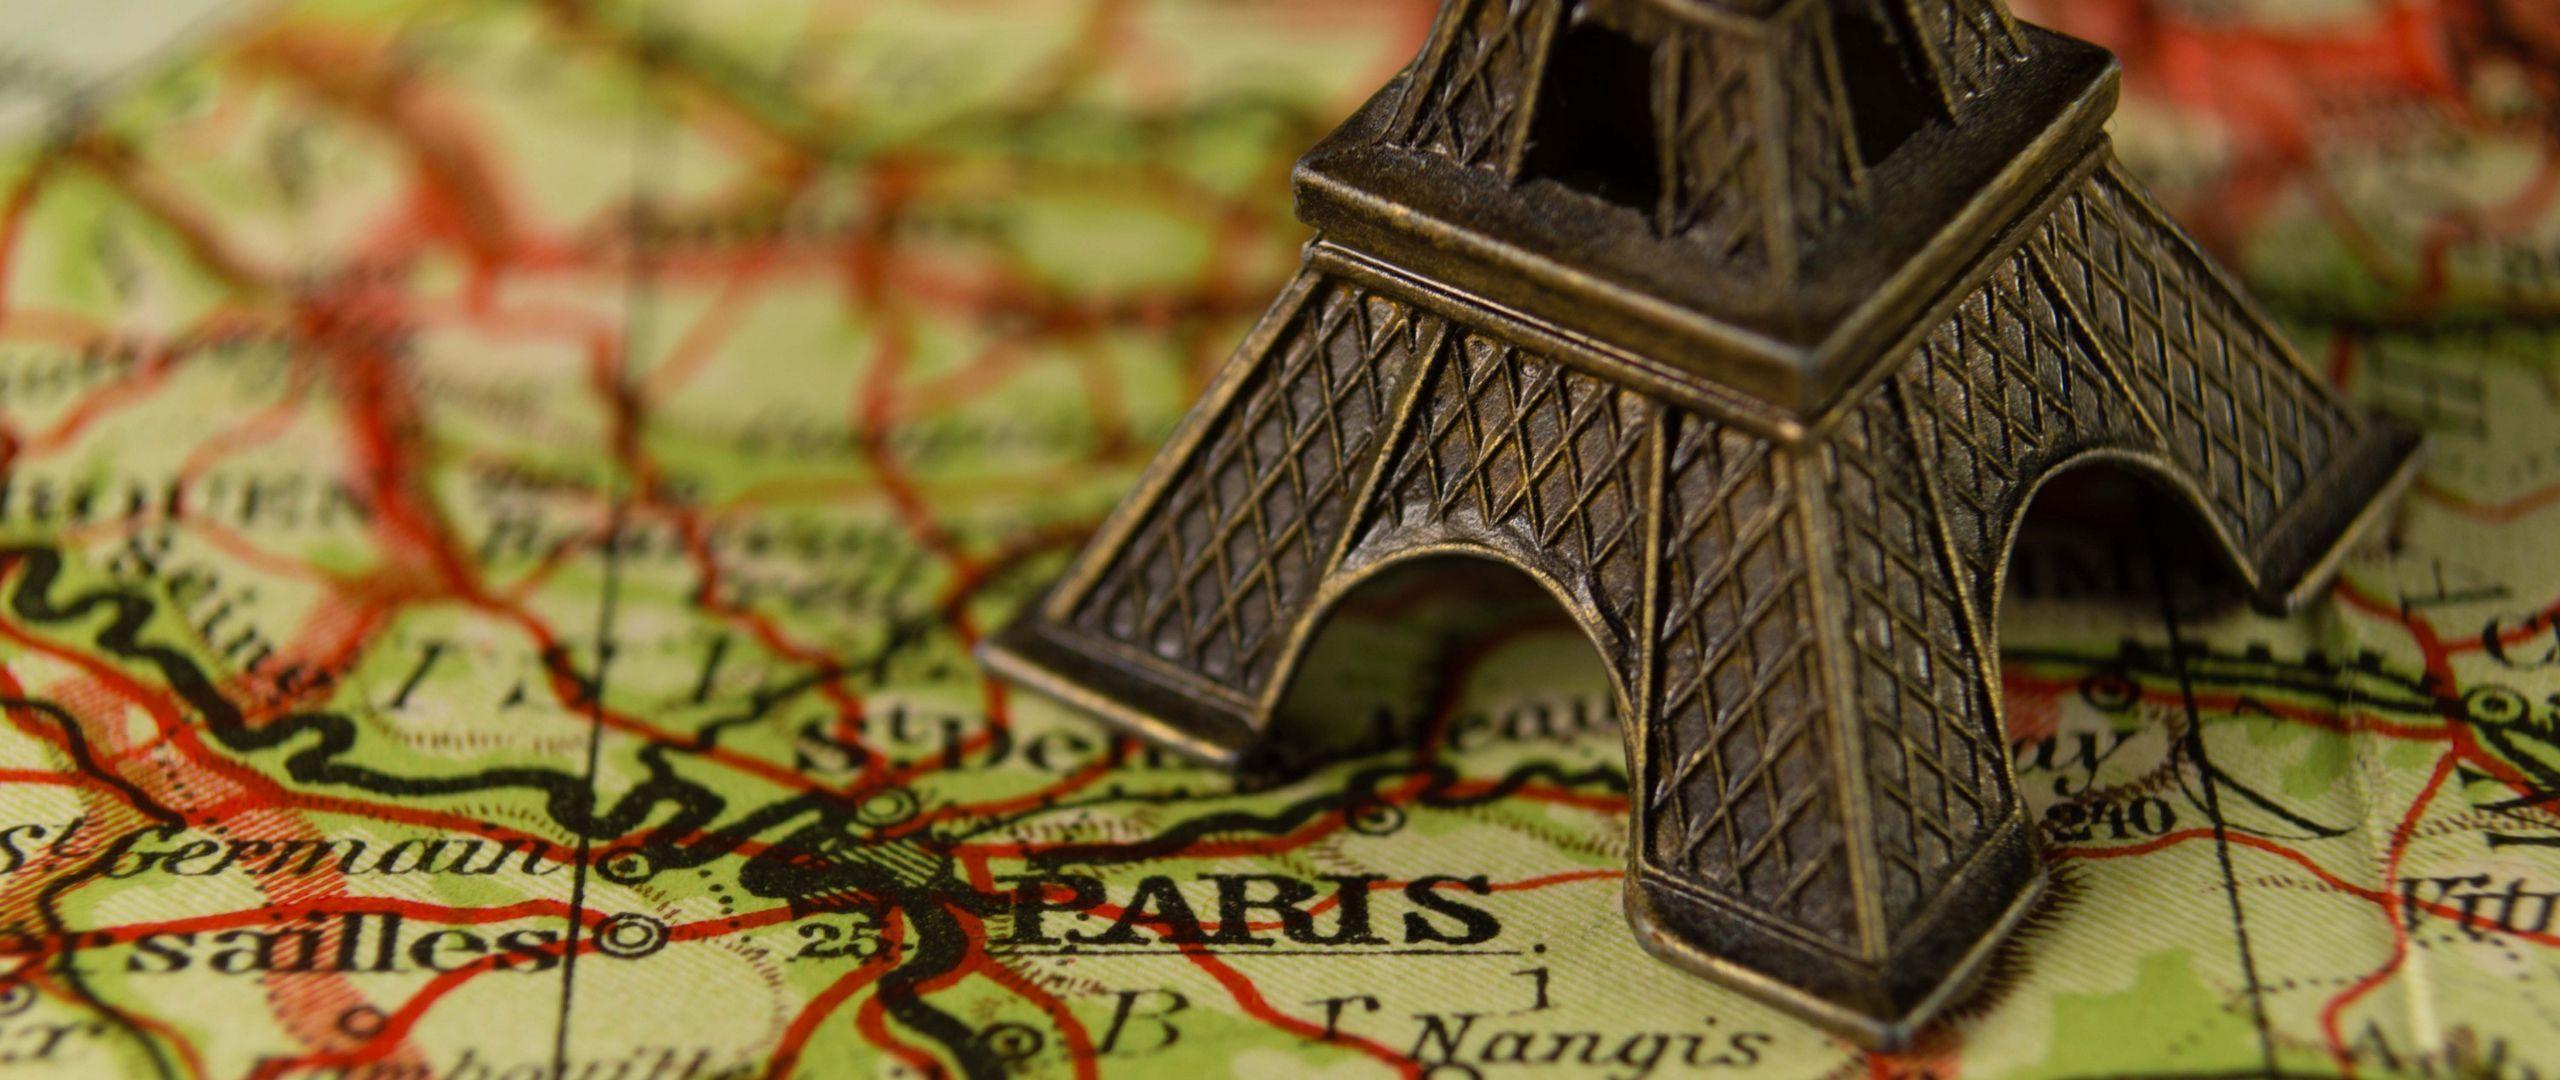 تصویر برج ایفل و نقشه کشور فرانسه مینیاتوری ساده و رایگان 